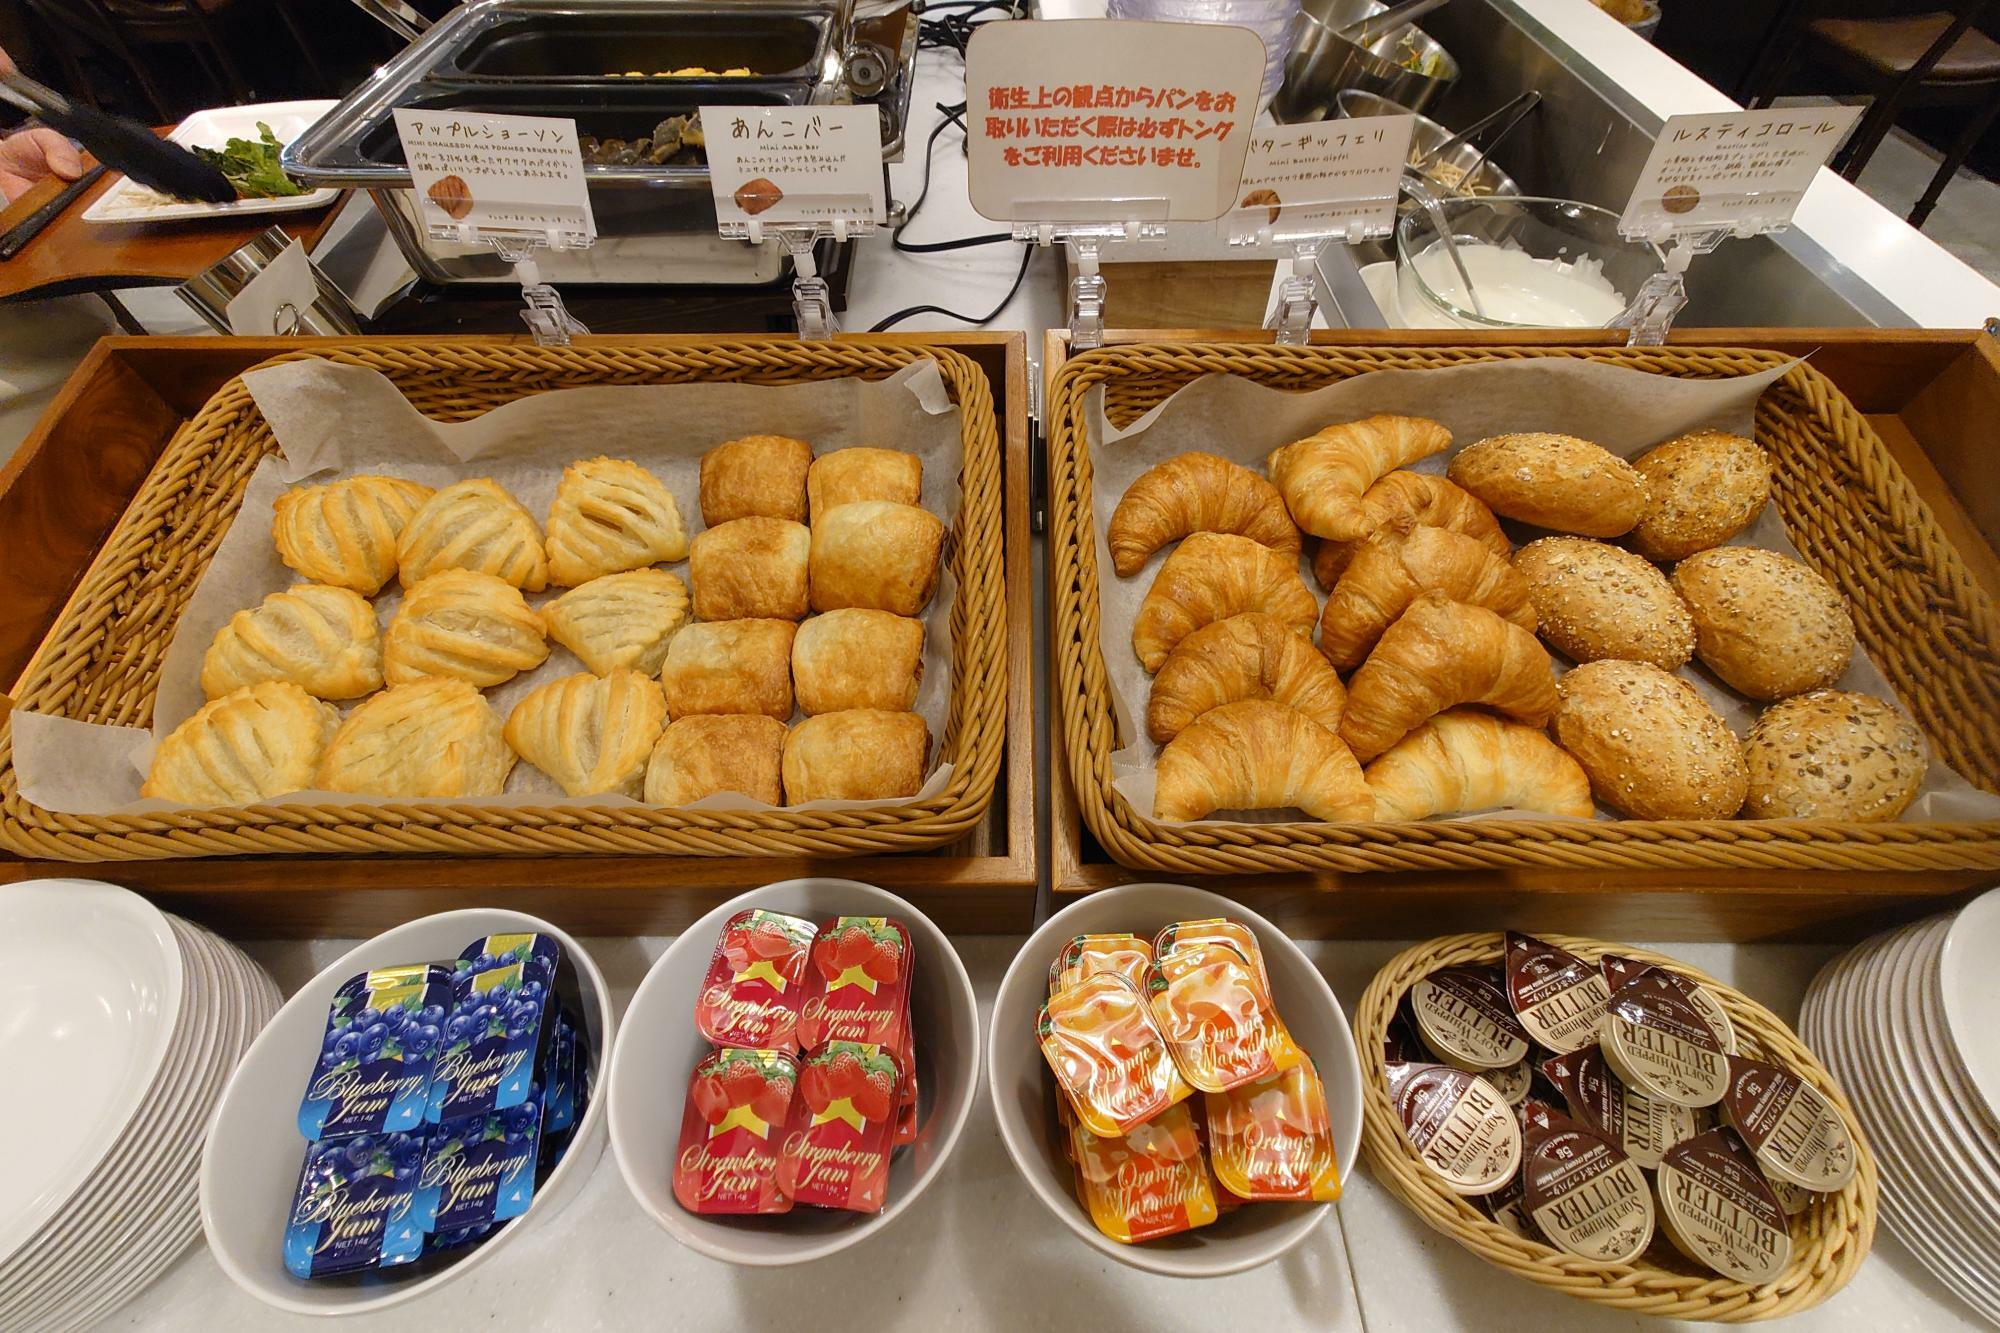 スーパーホテル甲府昭和インターの無料朝食